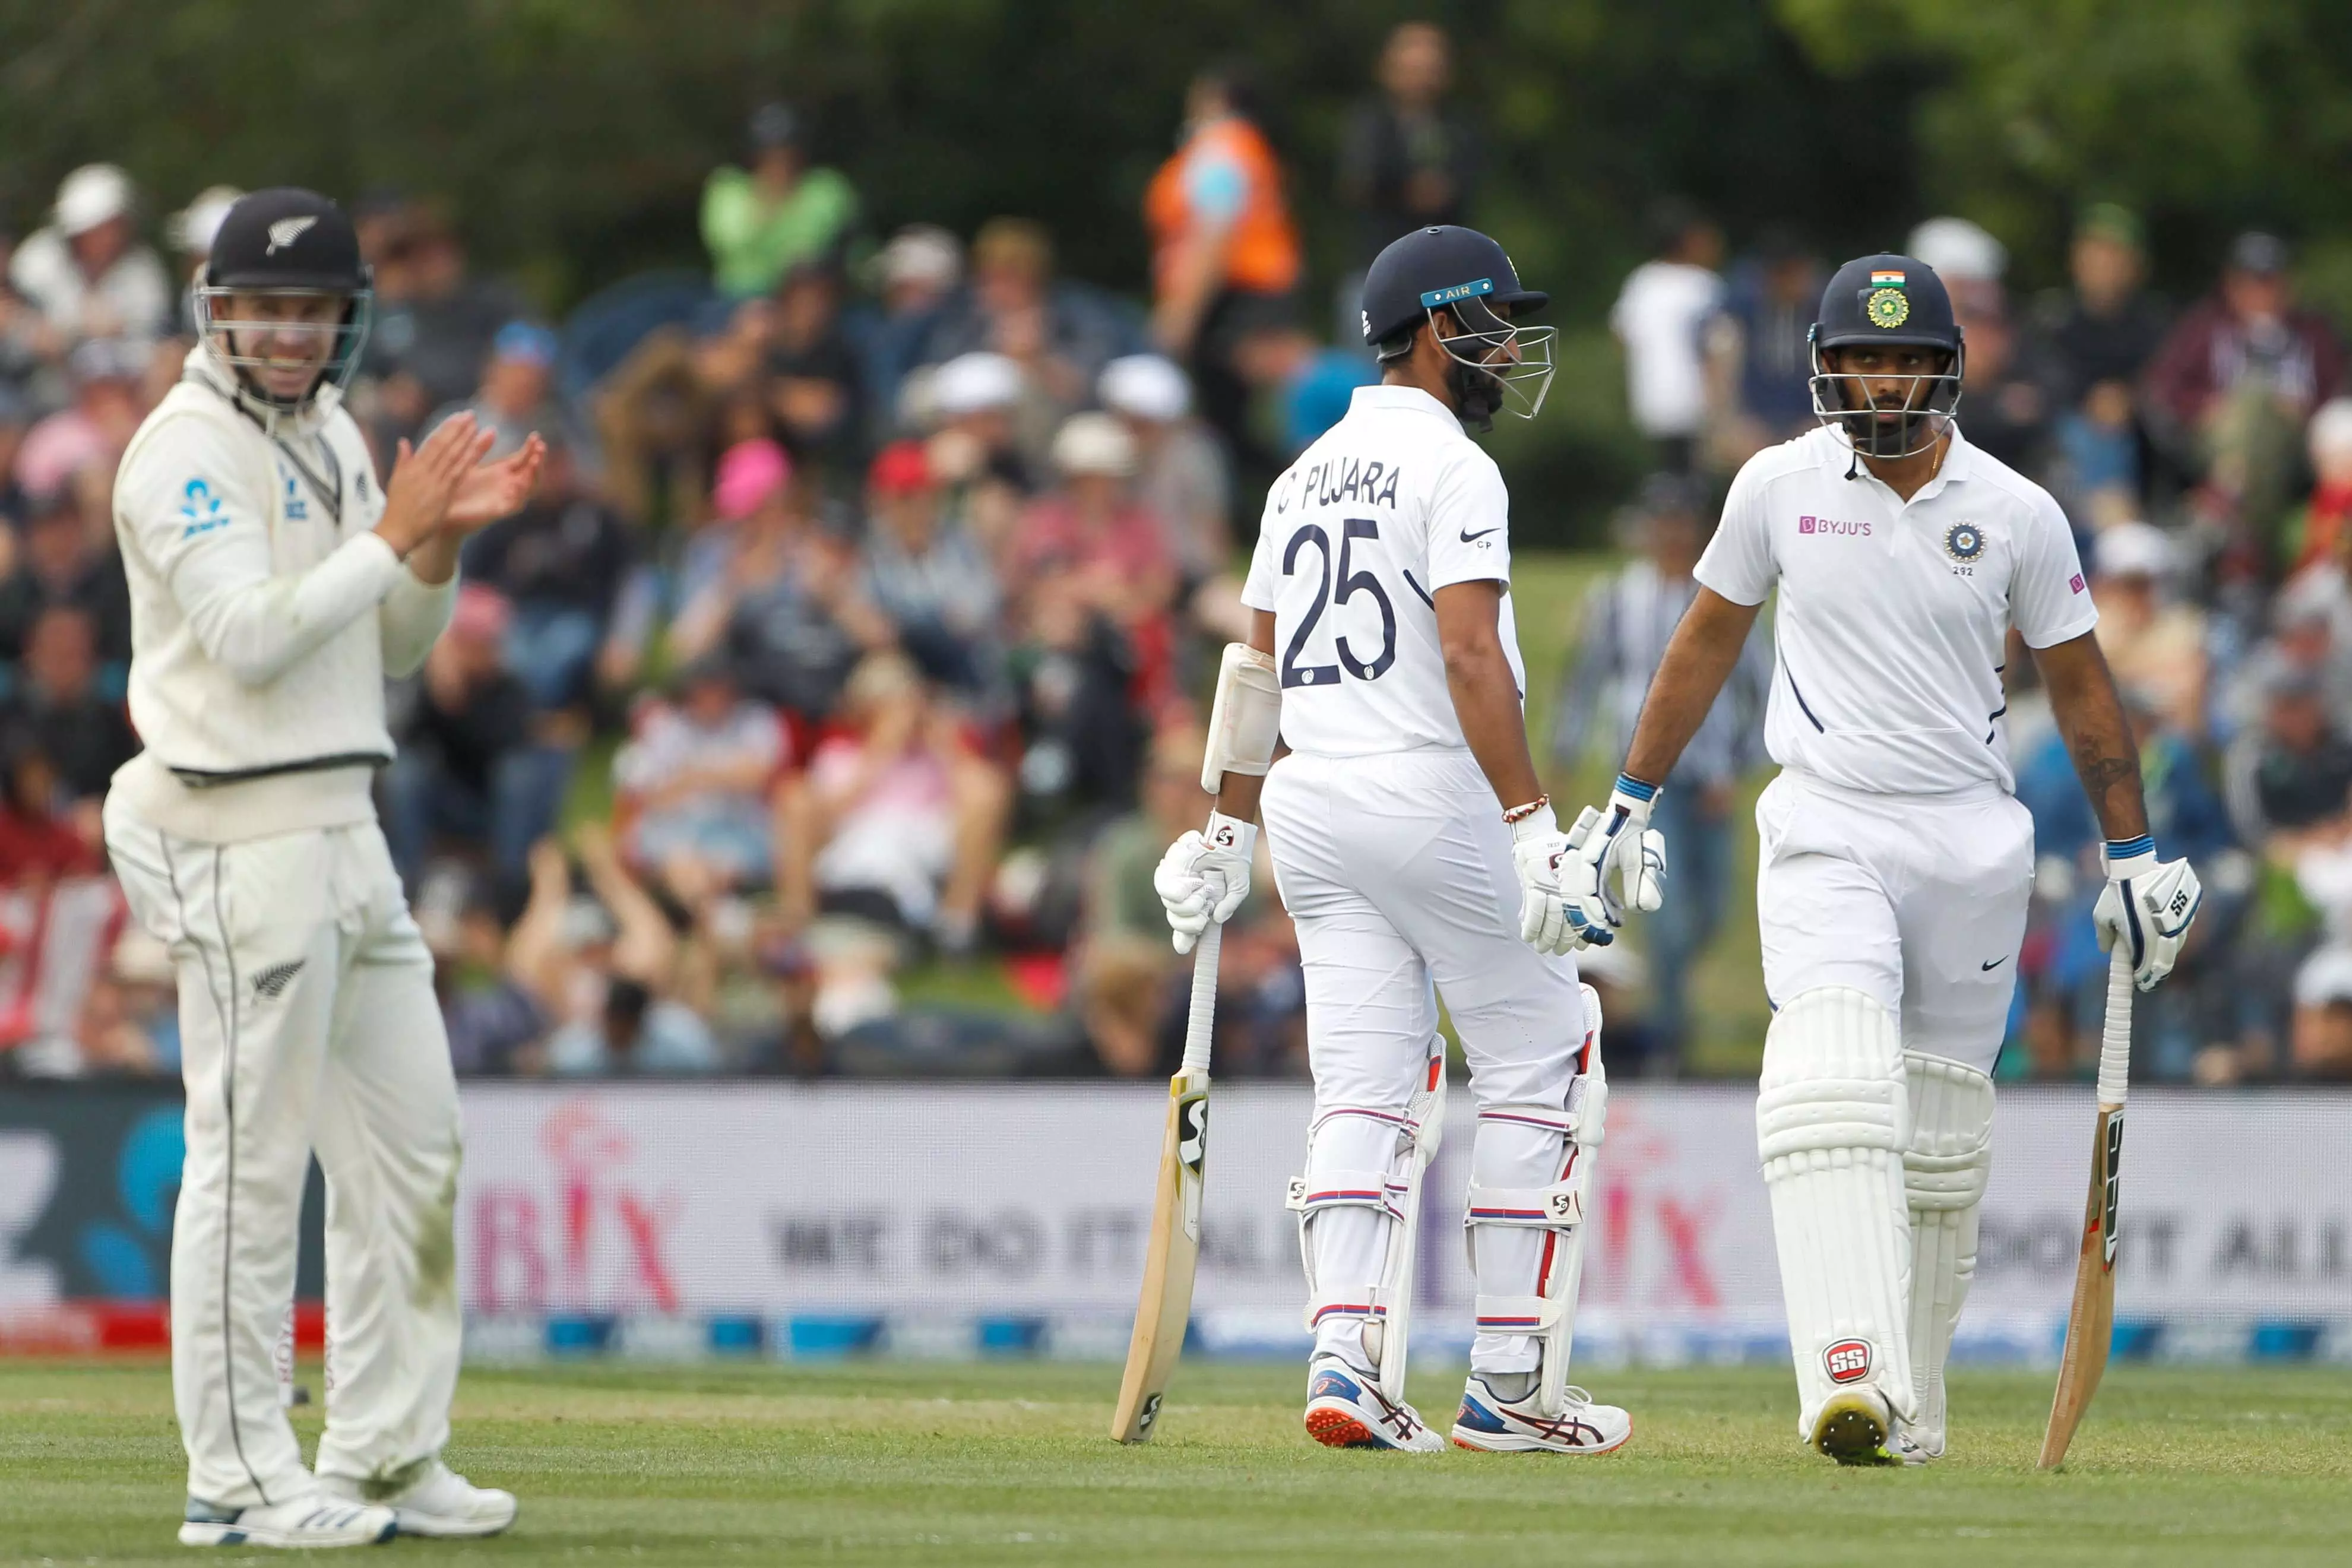 IND vs NZ: दूसरे टेस्ट में लंच के बाद भारतीय पारी 242 रनों पर सिमटी, कोहली समेत 5 खिलाड़ी दहाई का आंकड़ा नहीं छू सके